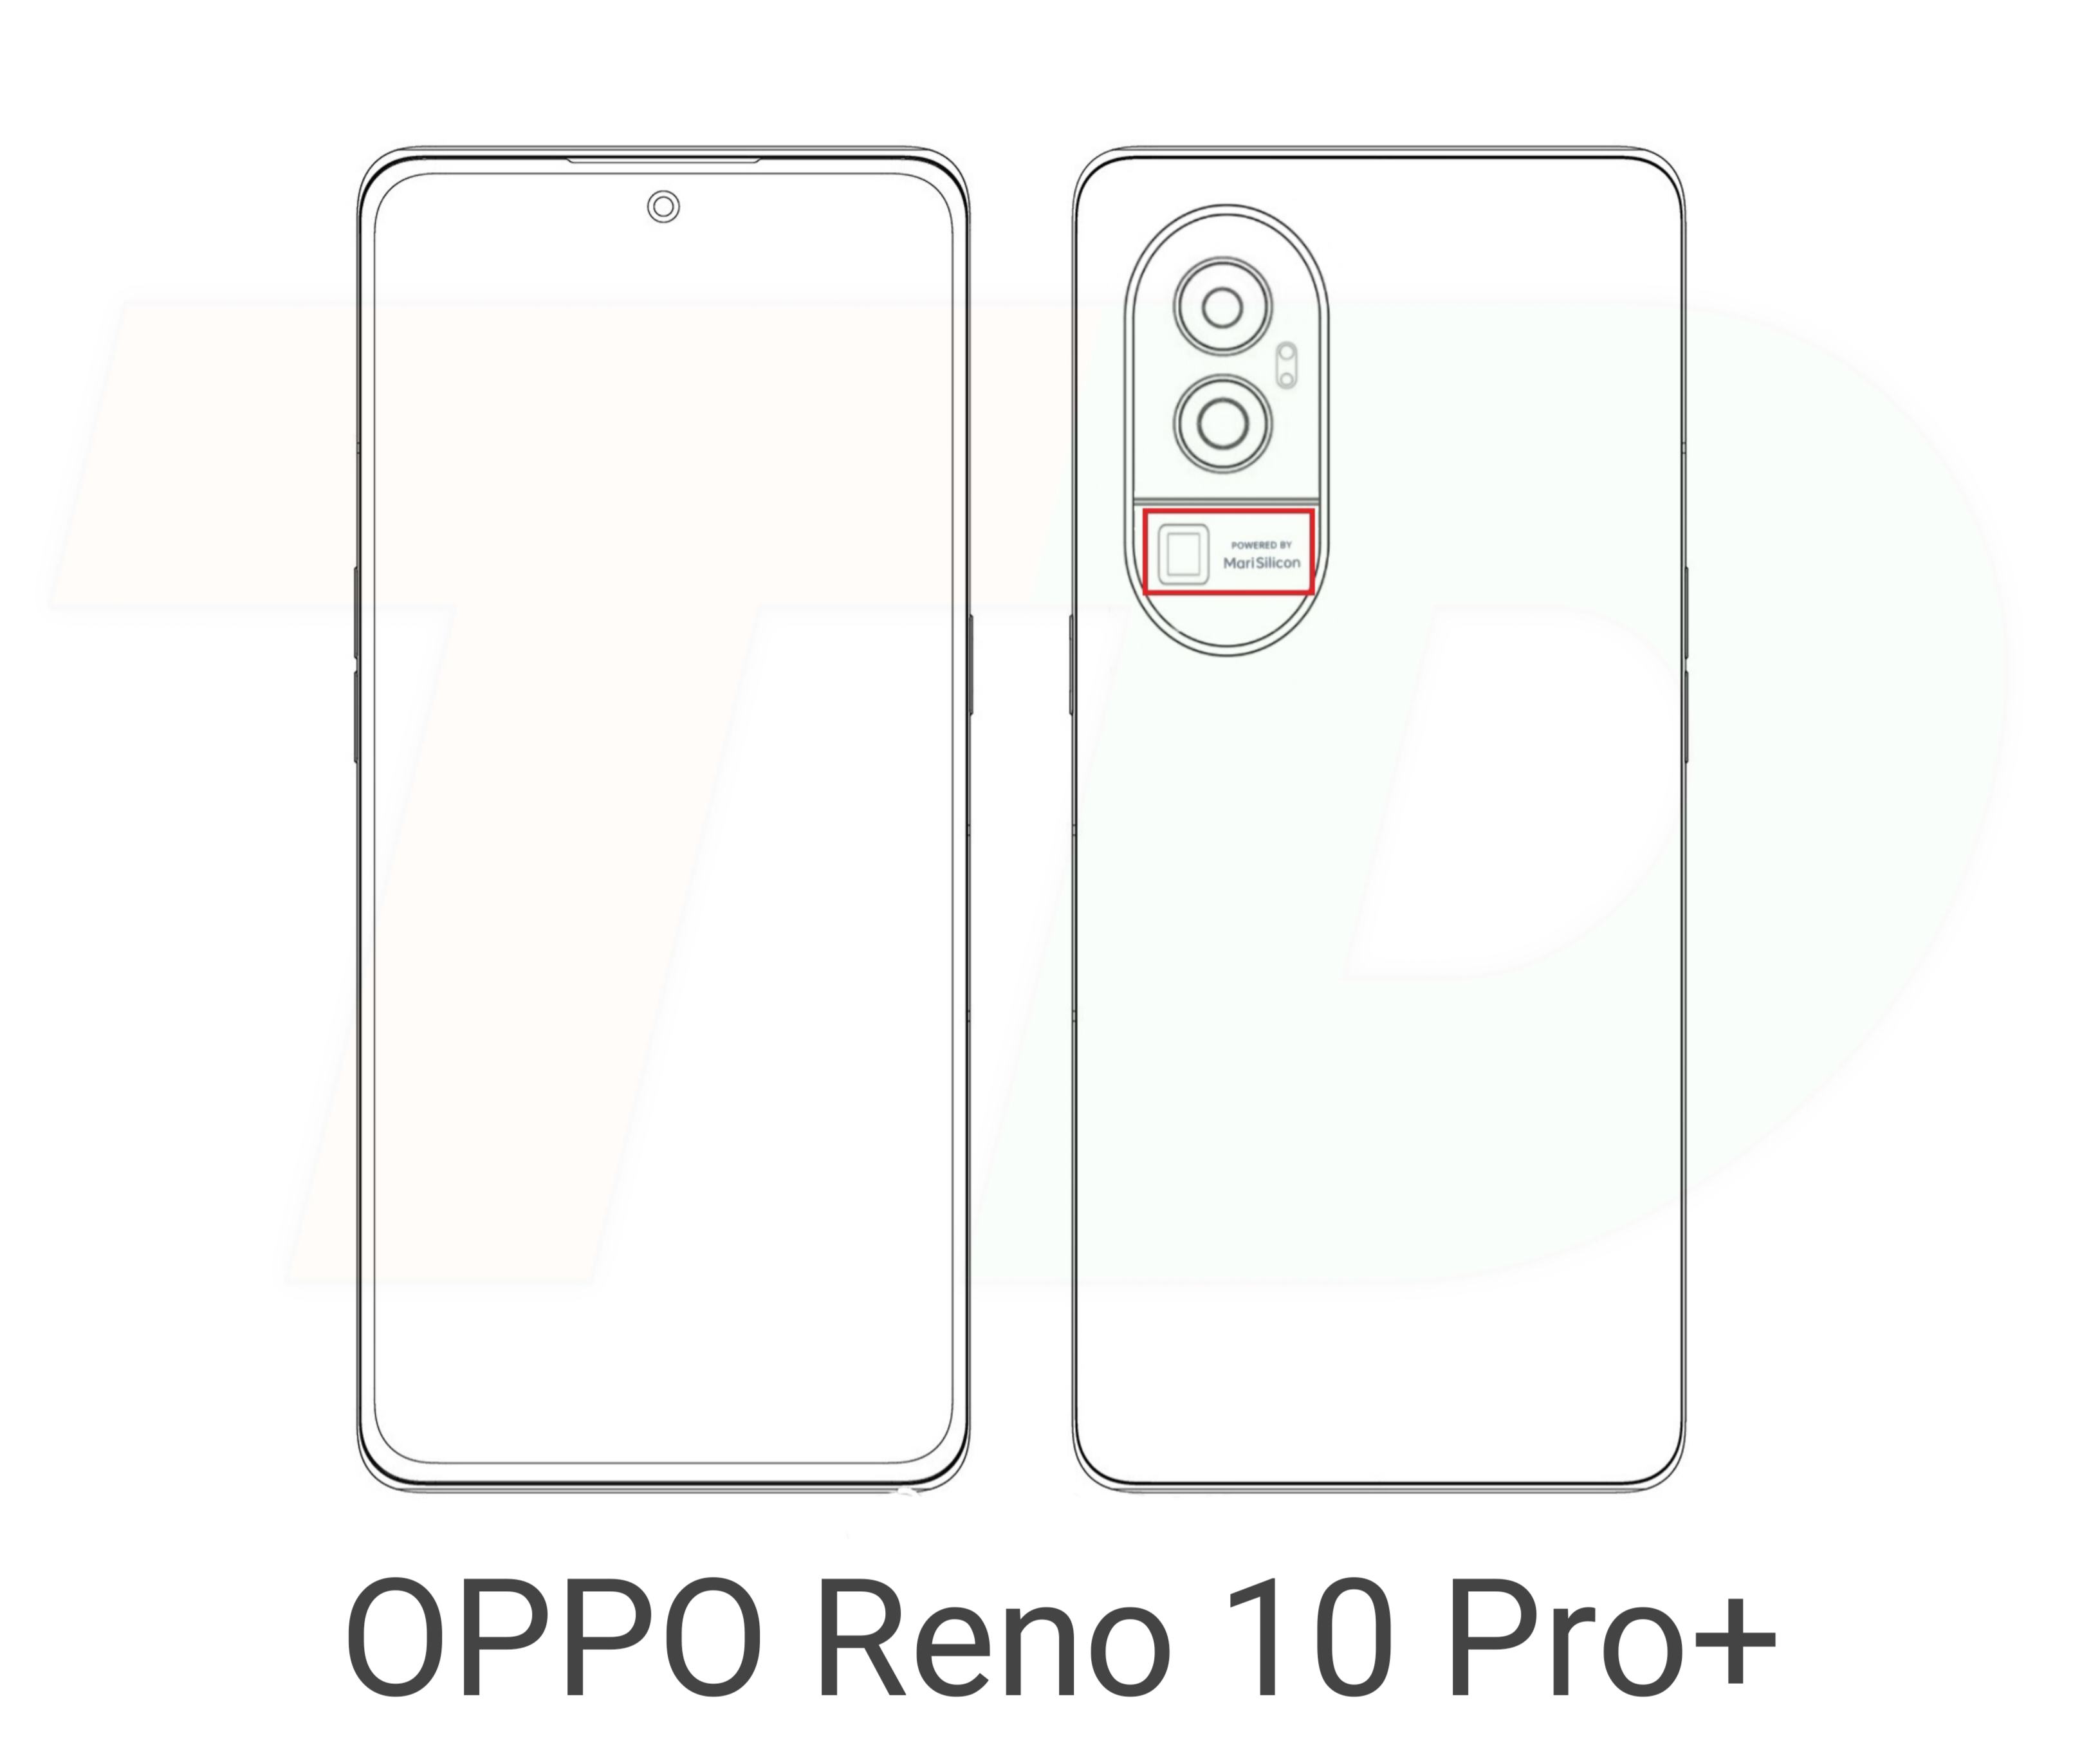 OPPO Reno 10 Pro+